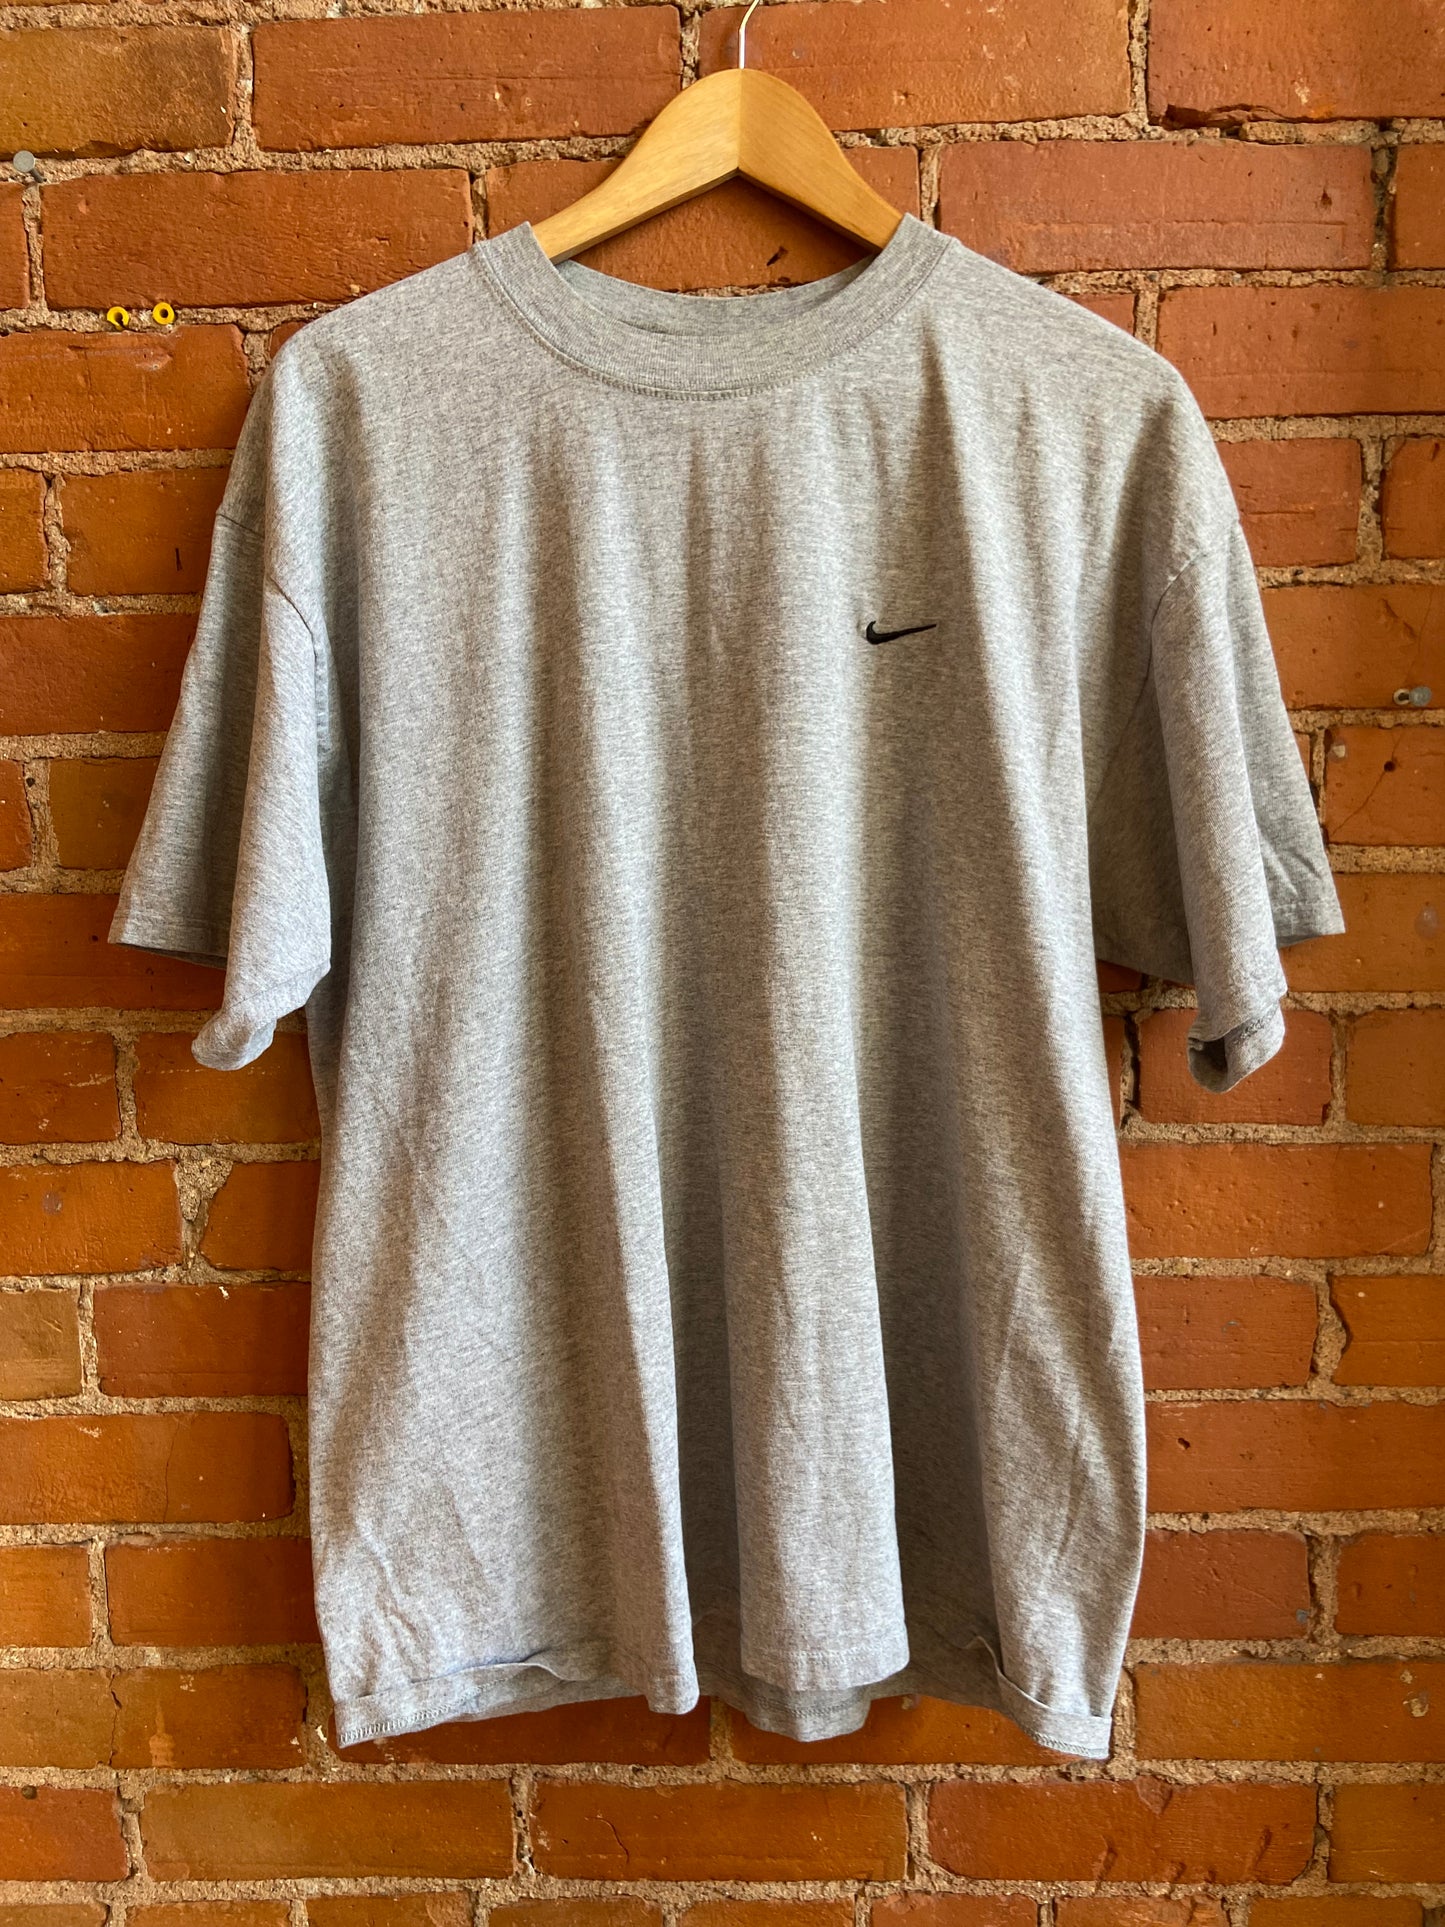 90’s Nike T shirt